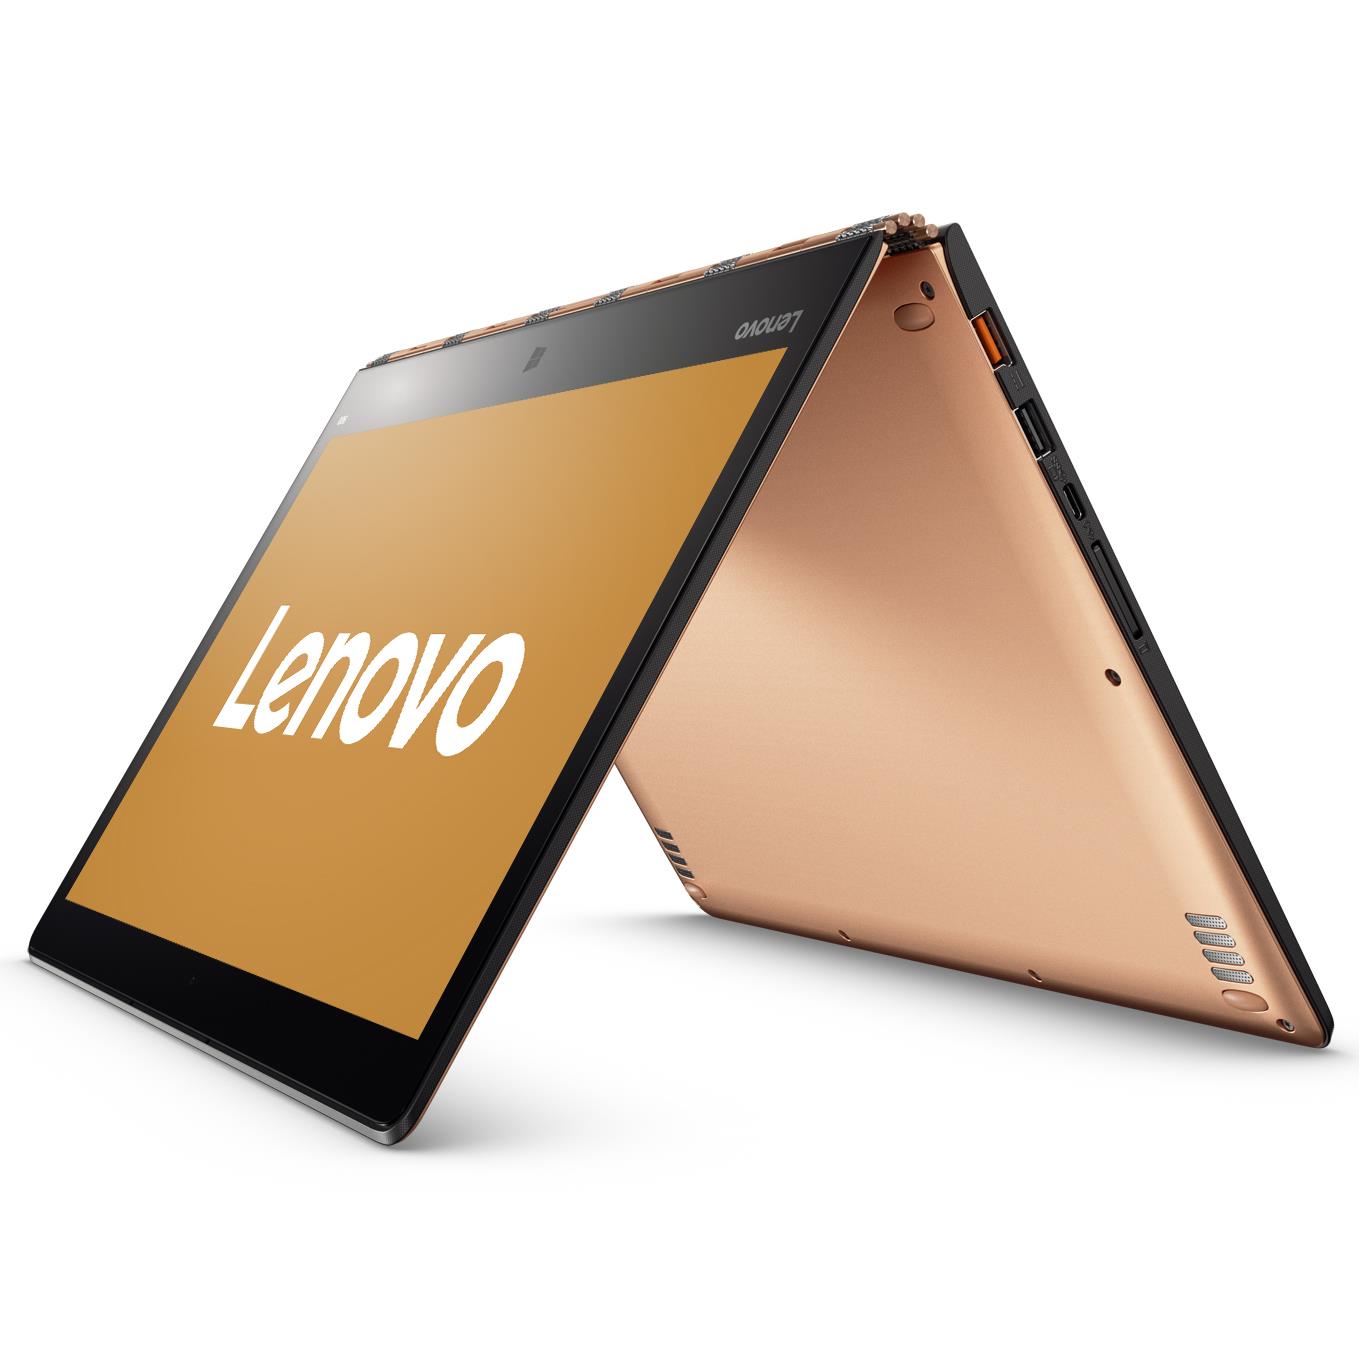 Lenovo Yoga Hybrid Ultrabook QHD Touch I7 6500u 1ghz 8gb